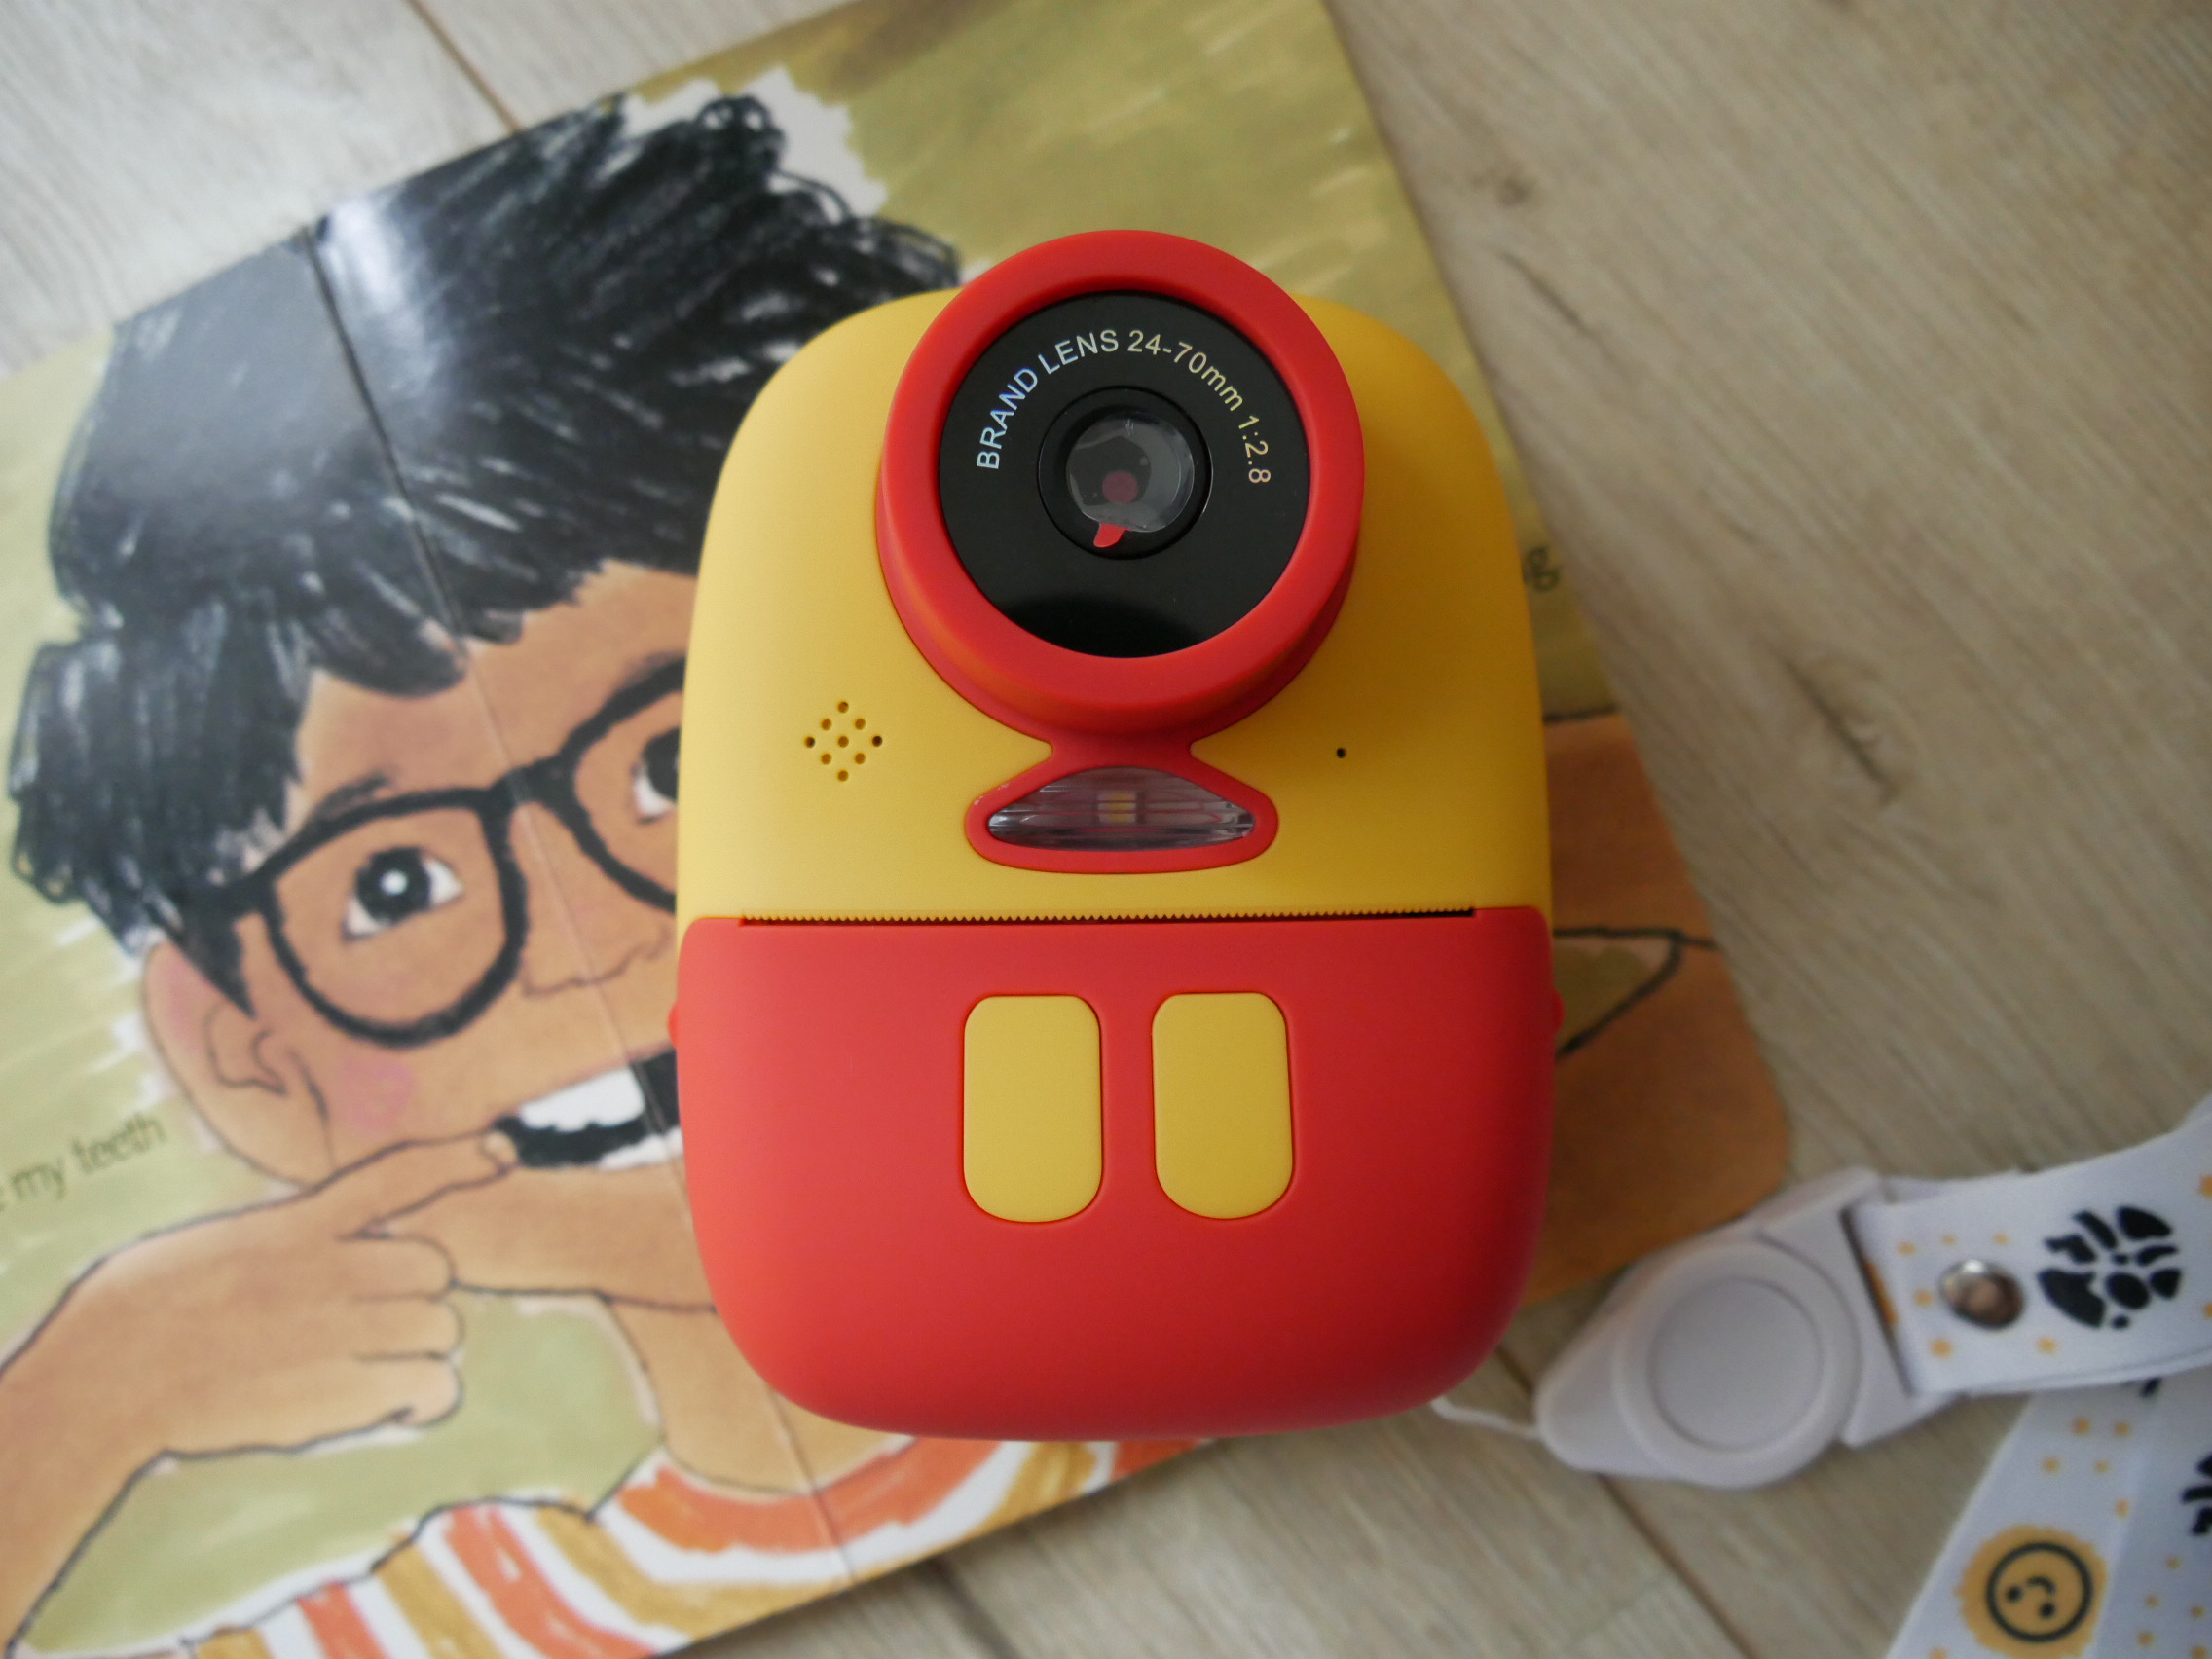 [啾團] LAQ DESiGN高畫質兒童列印相機,隨拍即印!小朋友們都超喜歡的有趣相機